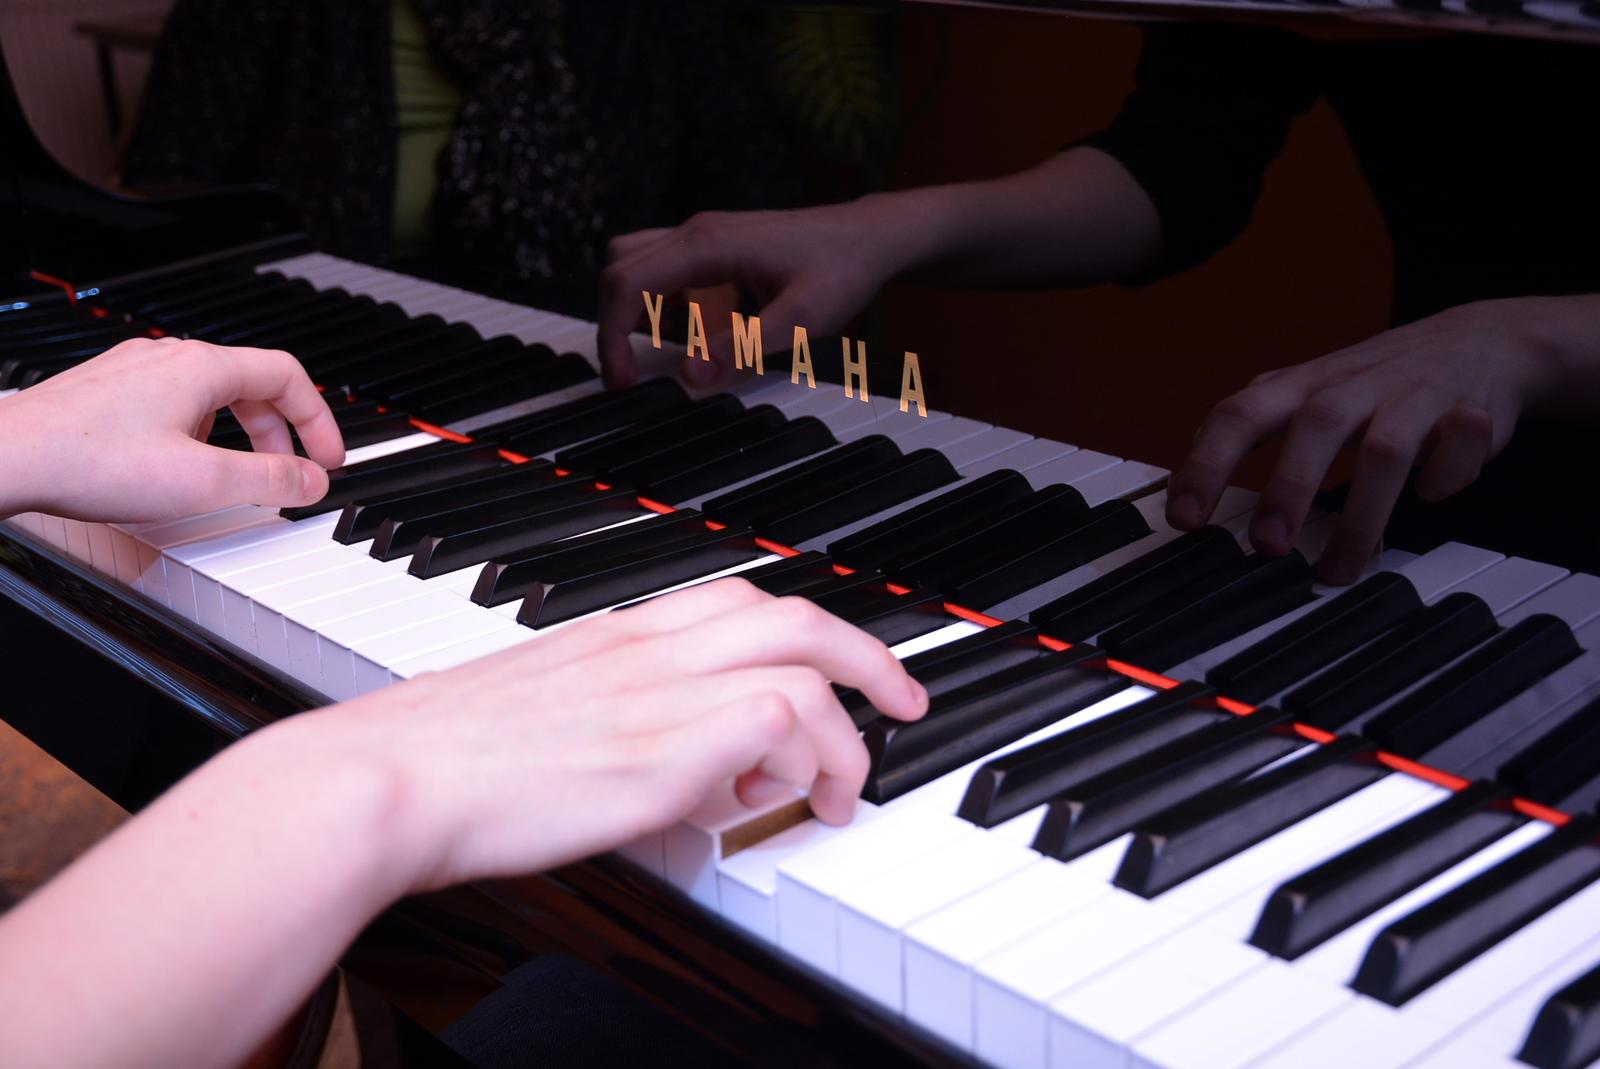 12.03.2015., Bjelovar - Ucenje sviranja klavira. 
Photo: Damir Spehar/PIXSELL